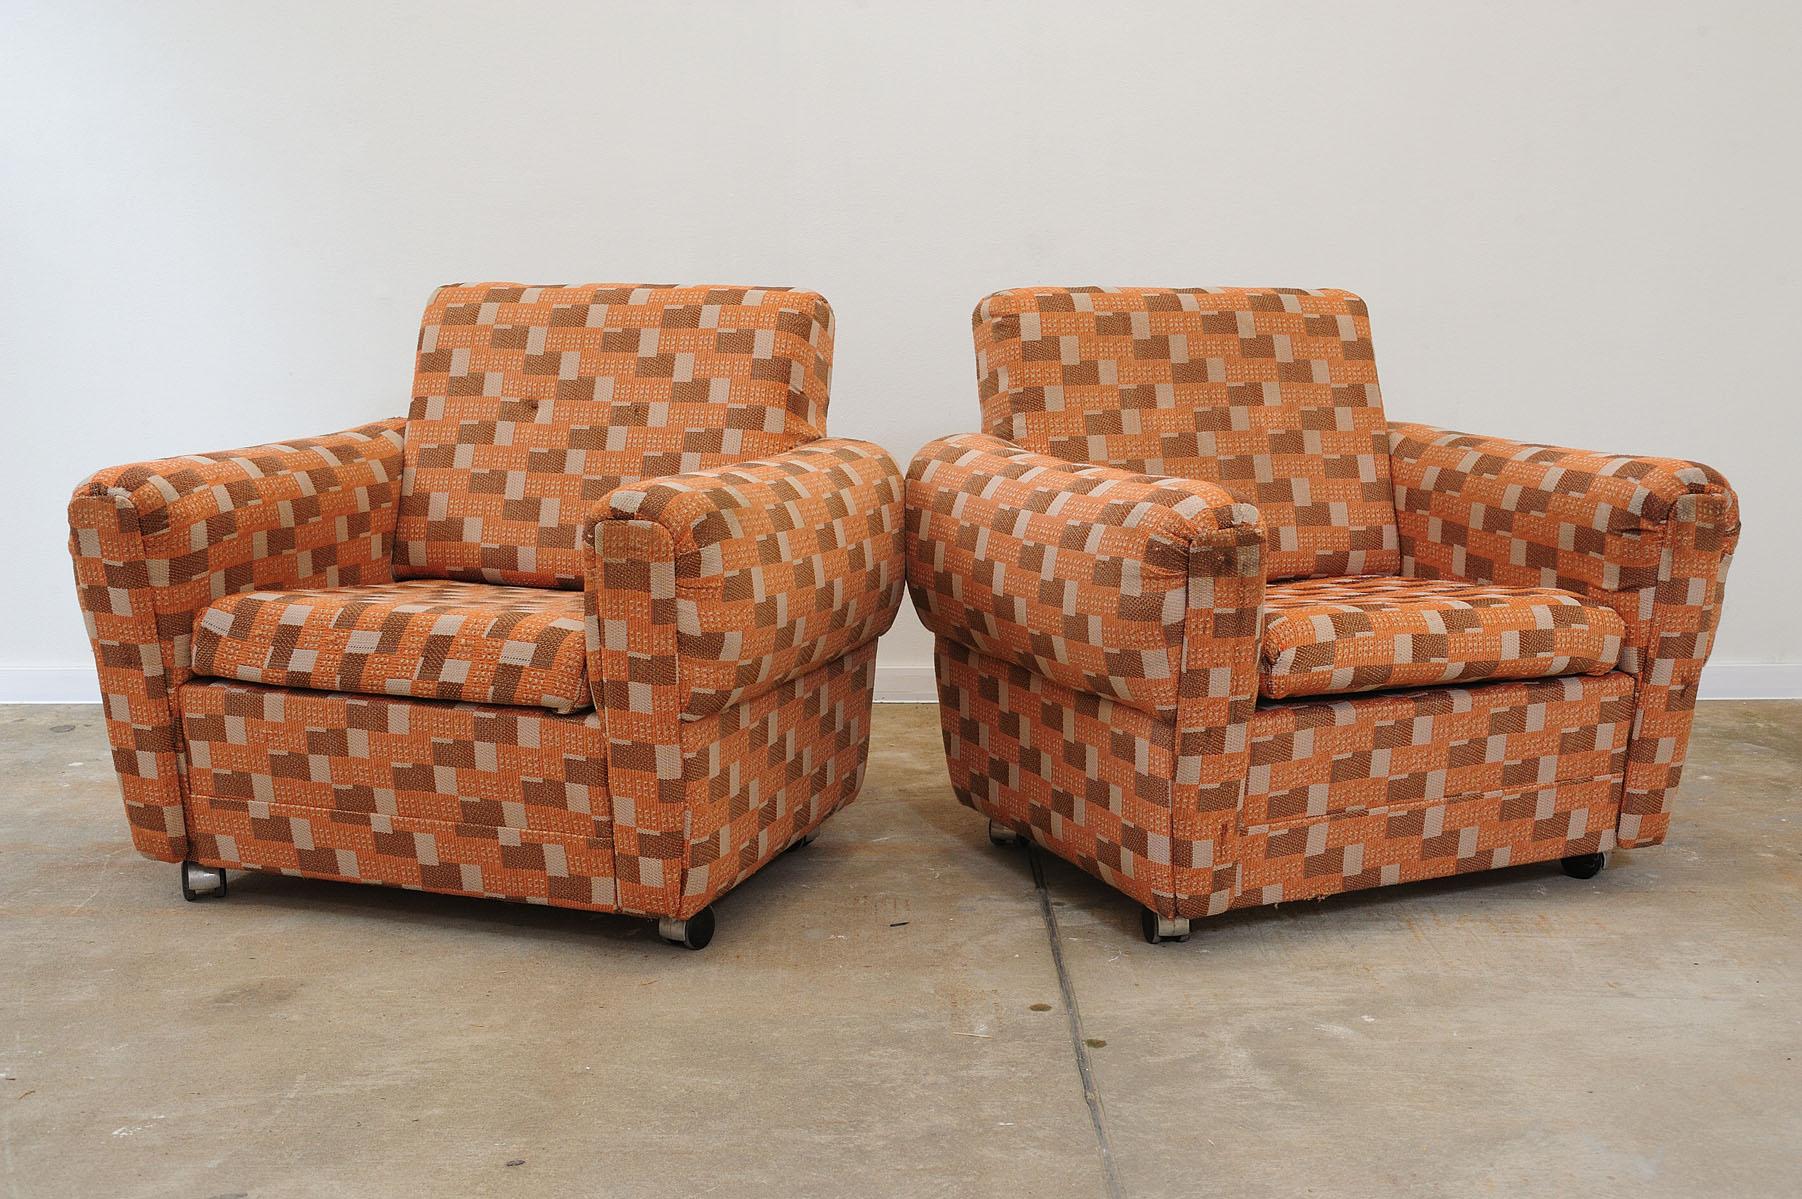 Ces fauteuils sur roulettes faisaient partie d'un ensemble de salon fabriqué dans les années 1970.
Ils représentent un exemple typique du design de meubles des années 1970/1980 du XXe siècle dans l'ancienne Tchécoslovaquie.
Le mobilier est très